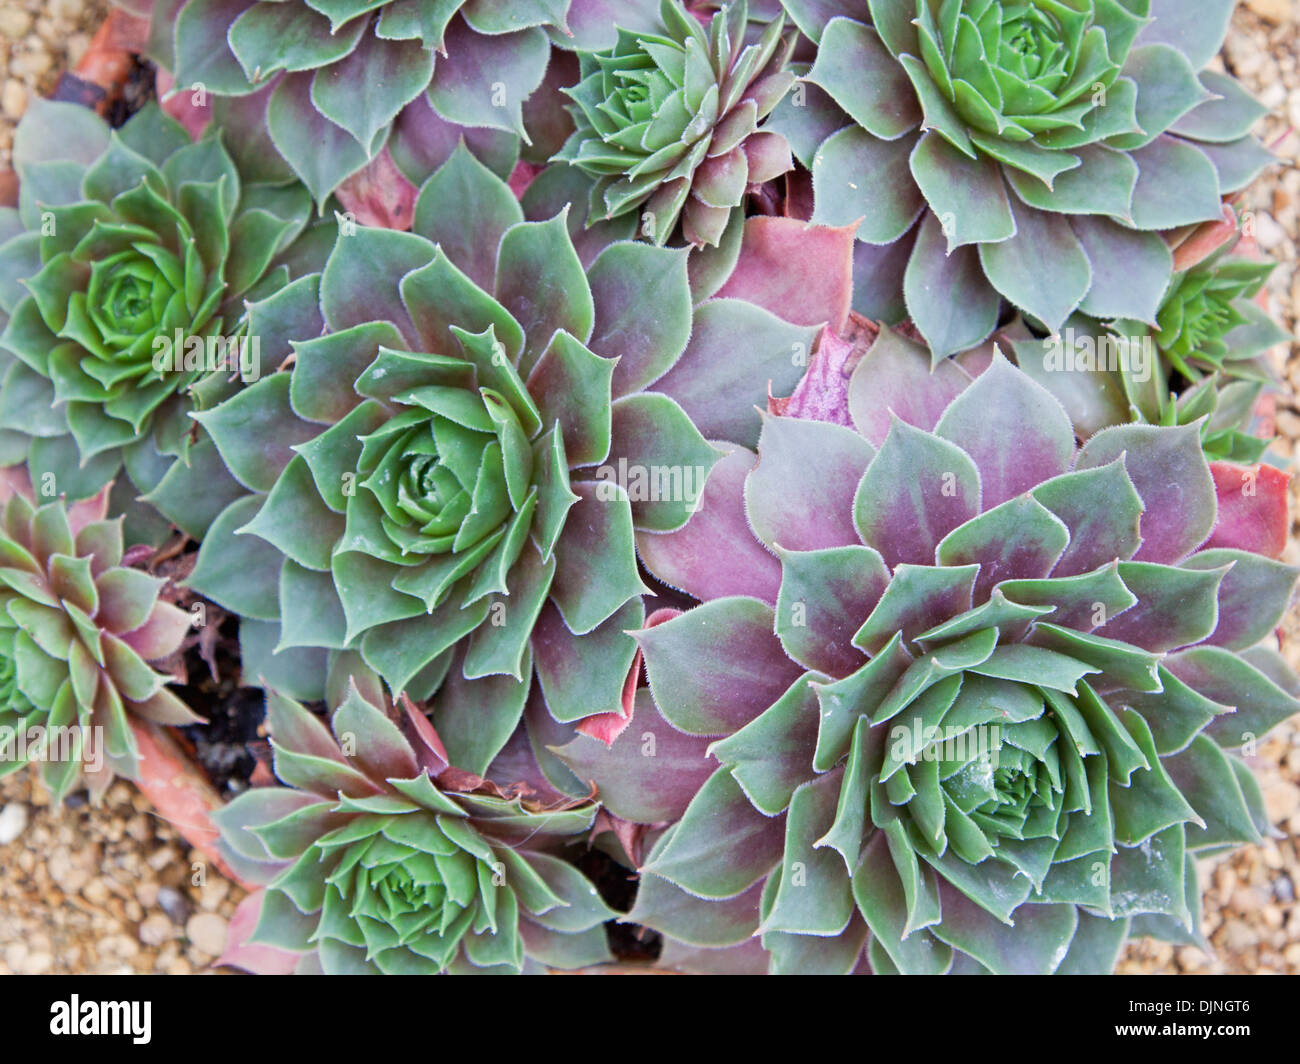 Sempervivum plants of the variety Othello Stock Photo